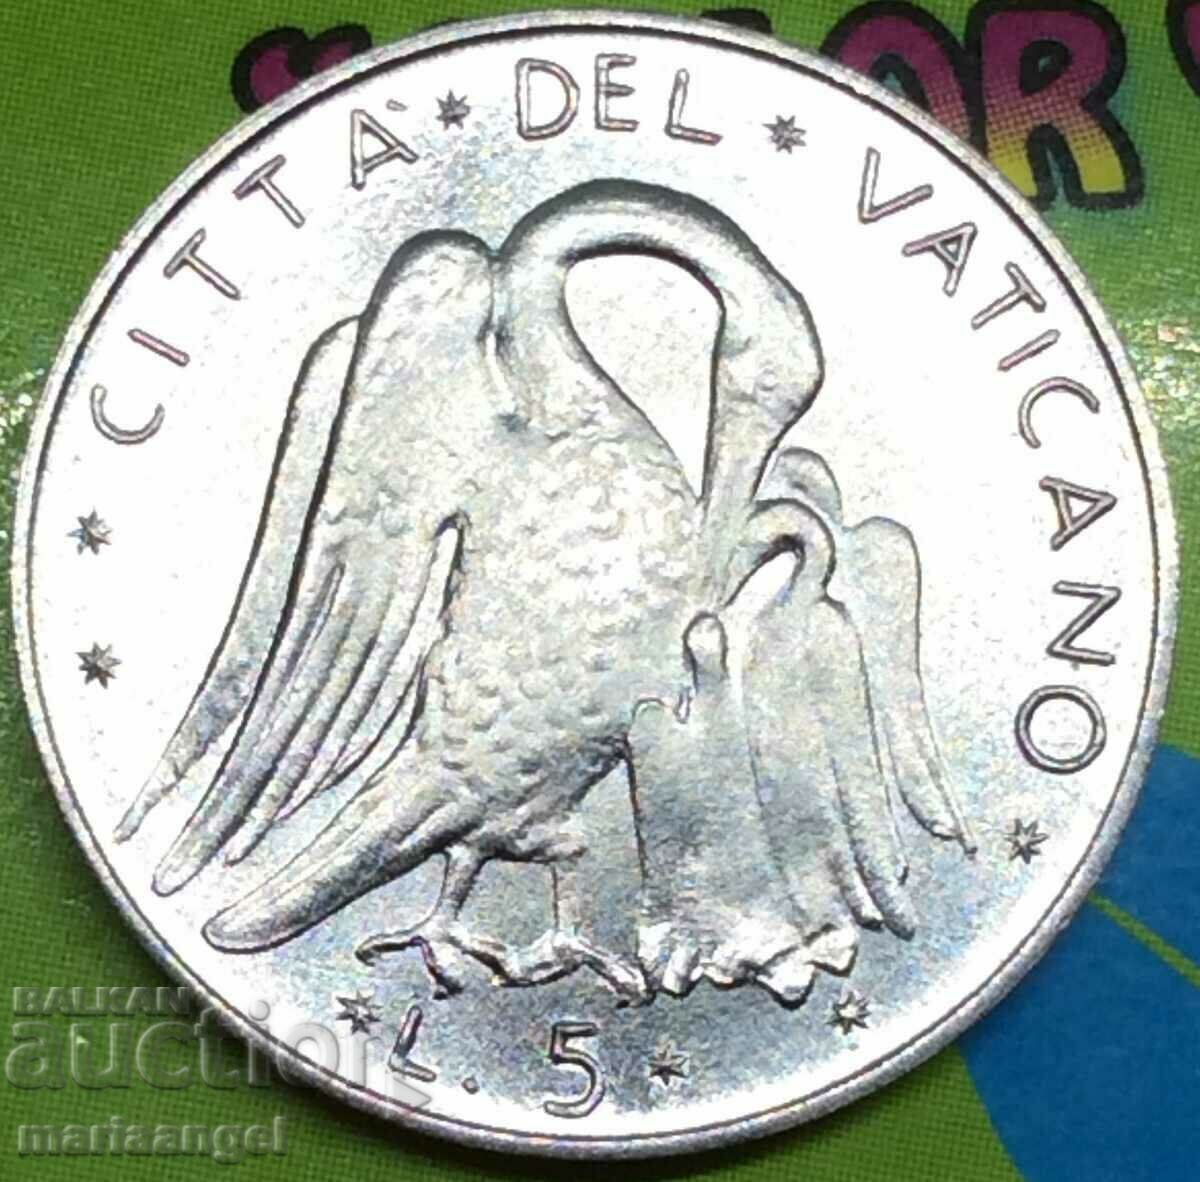 5 lire 1976 vatican